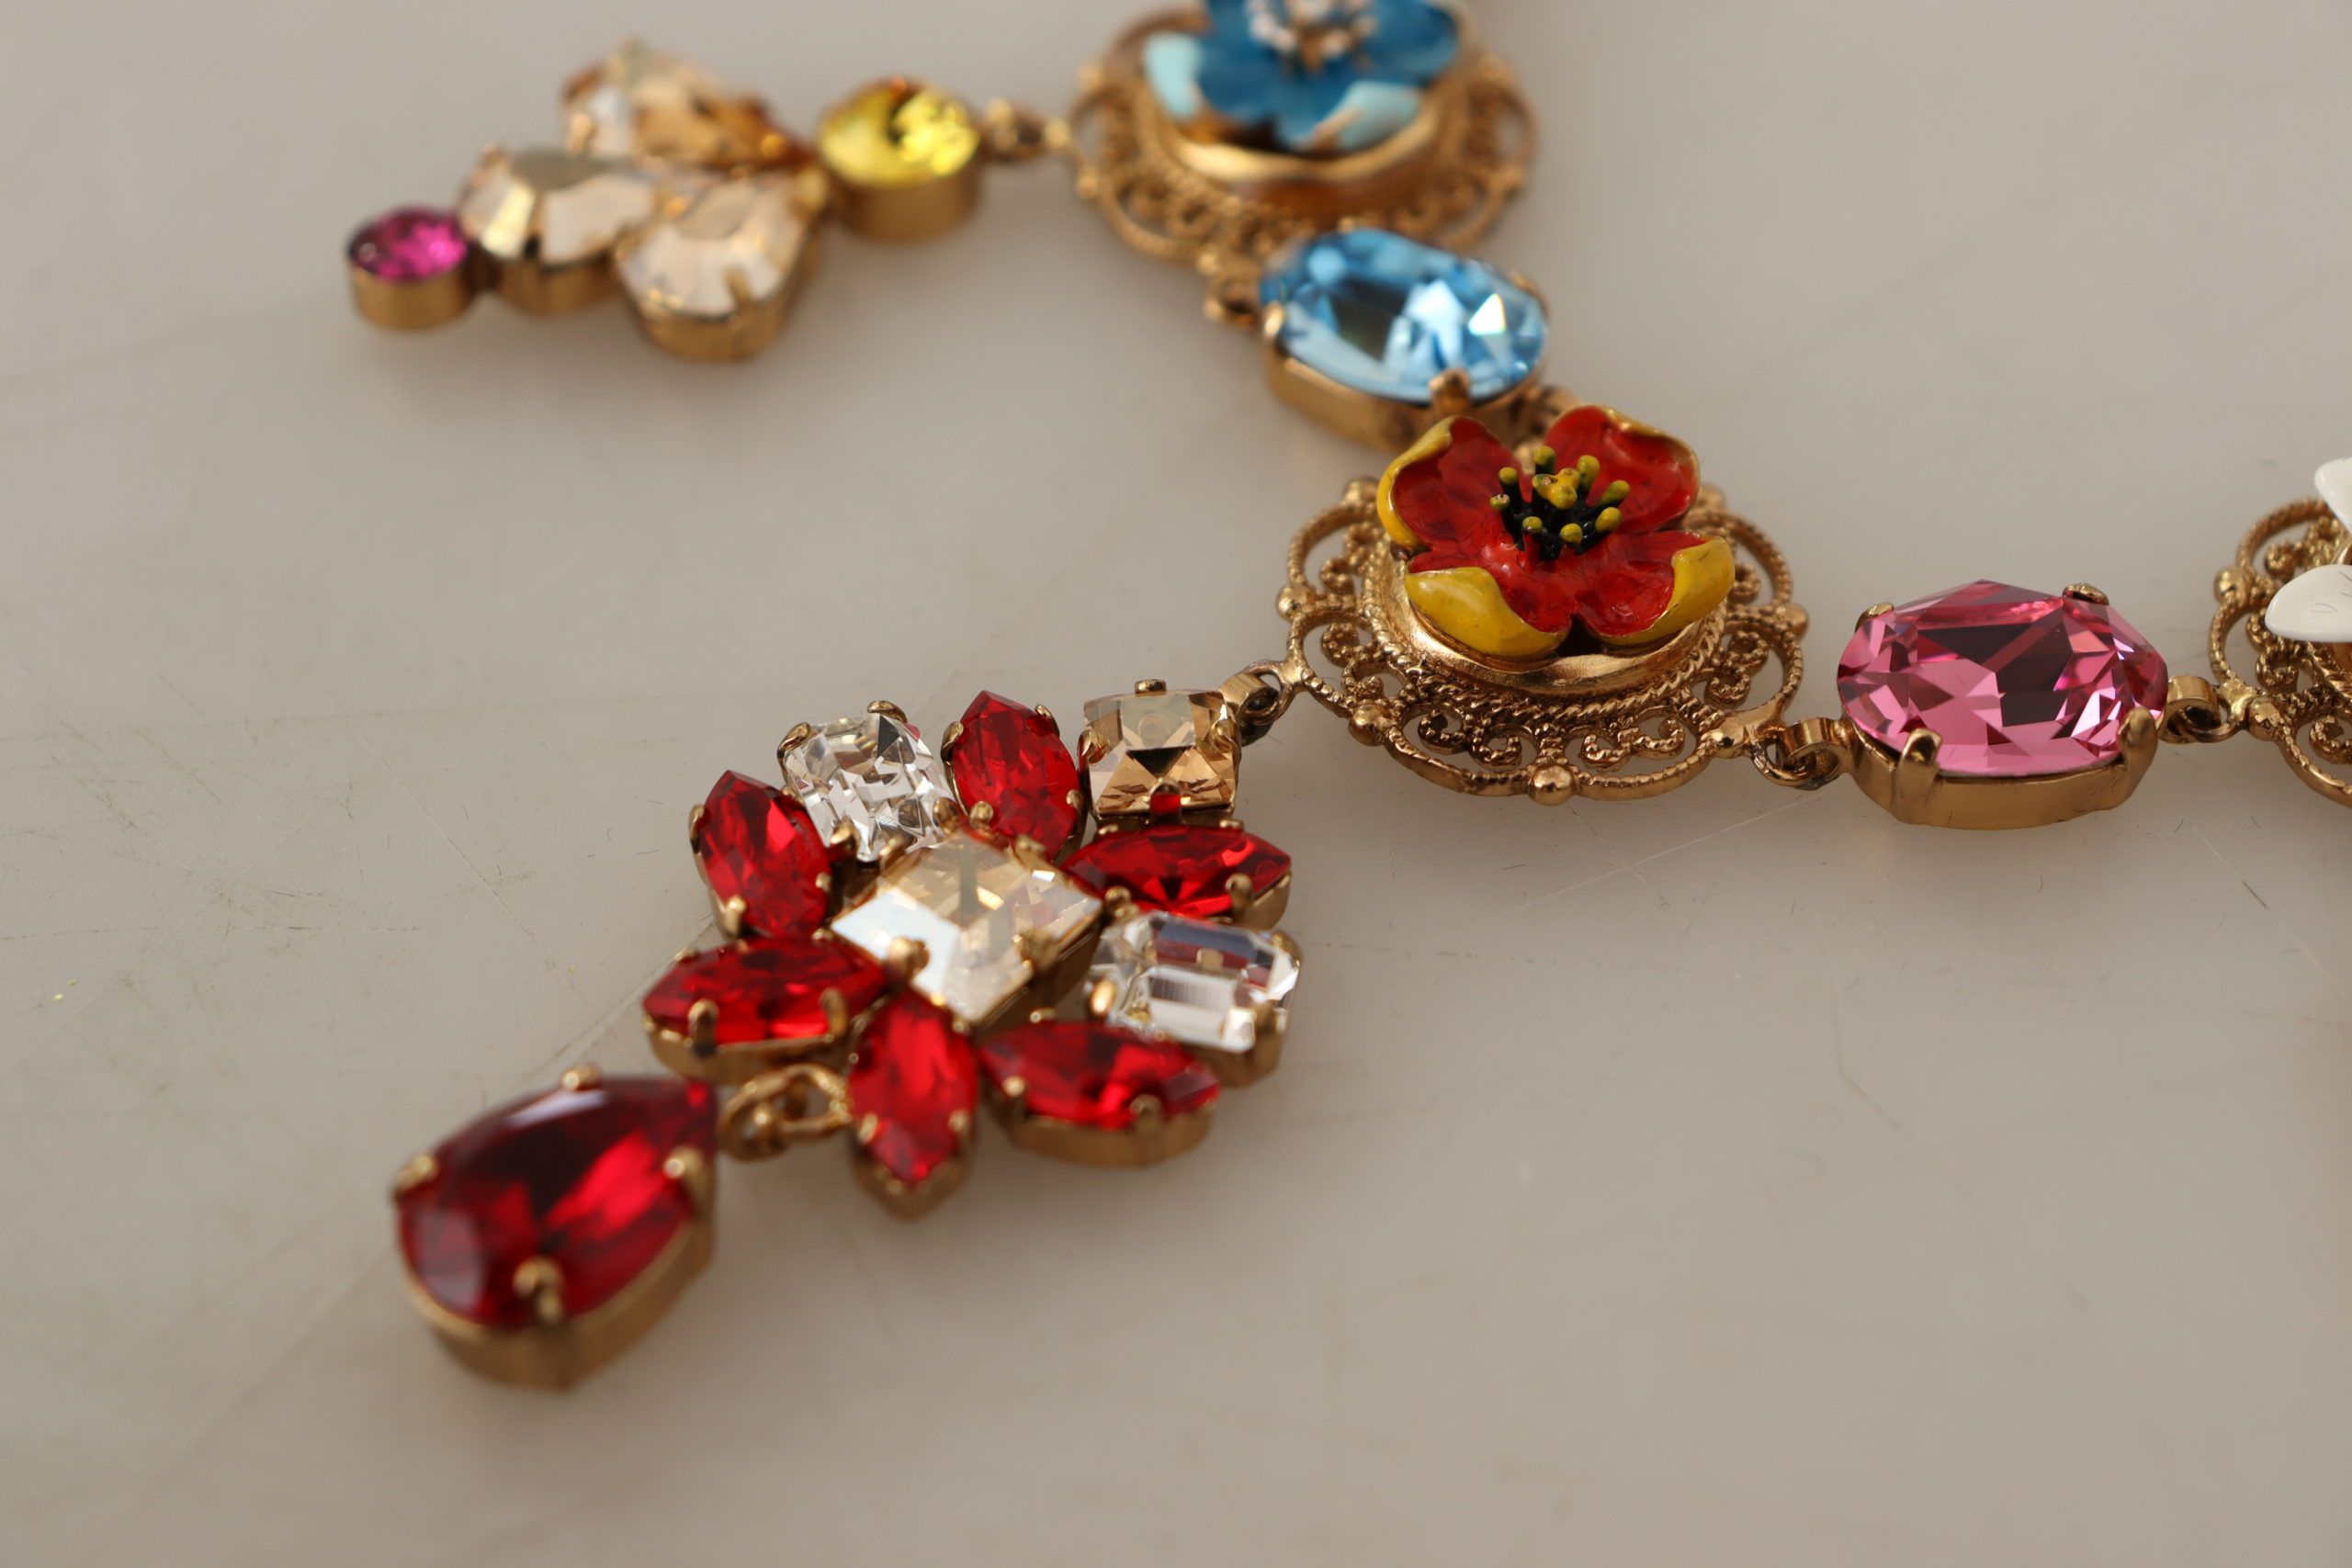 Dolce & Gabbana Elegante Statement-Halskette mit Blumenmuster